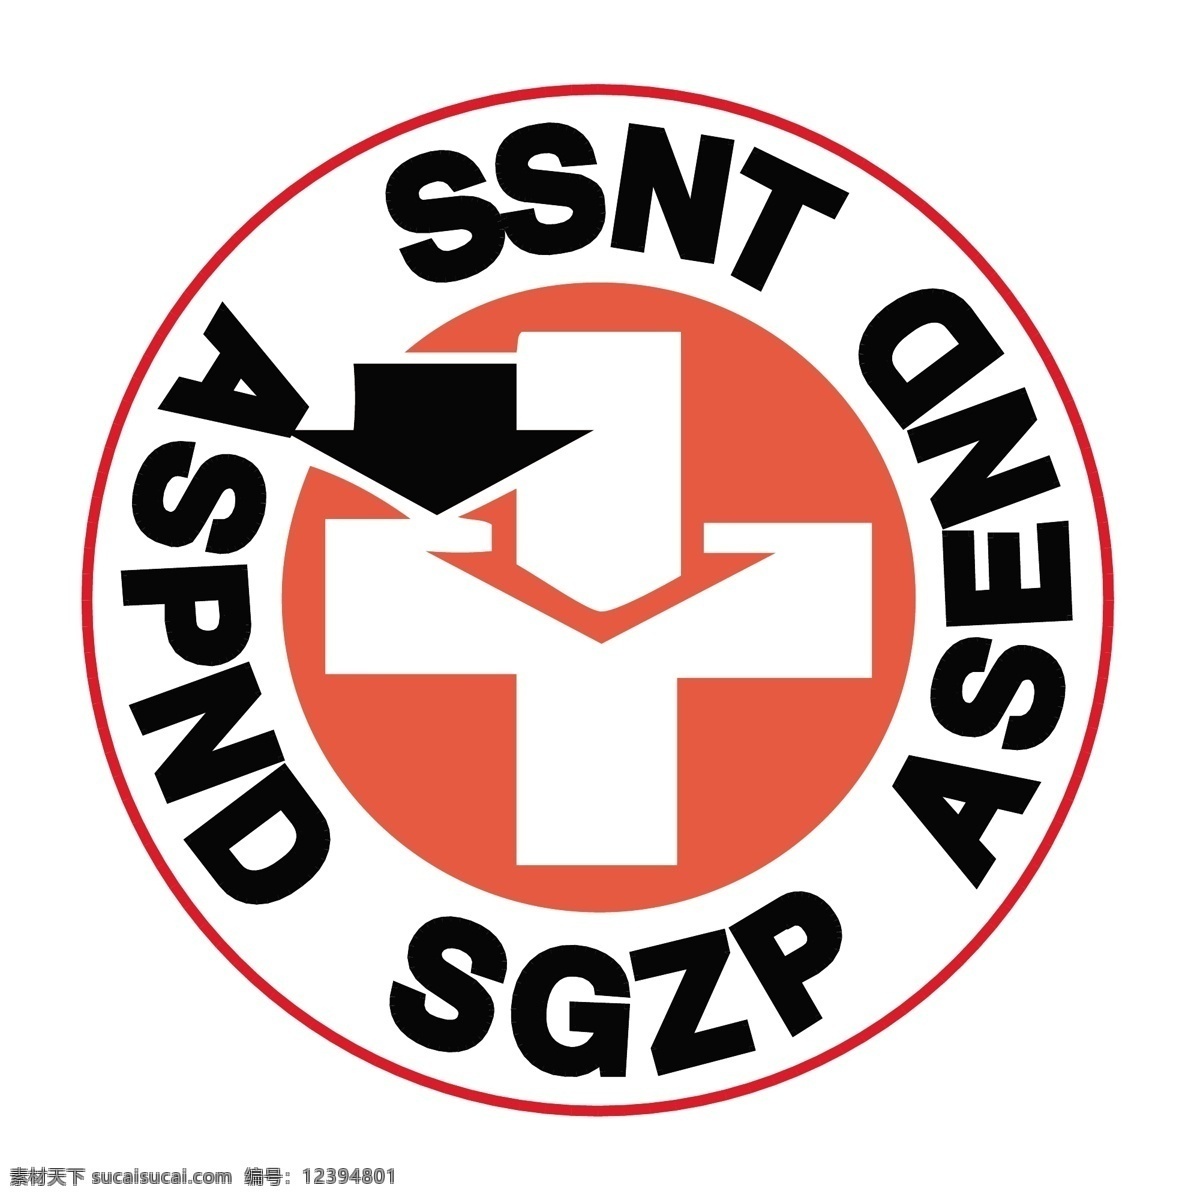 ssnt 标识 公司 免费 品牌 品牌标识 商标 矢量标志下载 免费矢量标识 矢量 psd源文件 logo设计